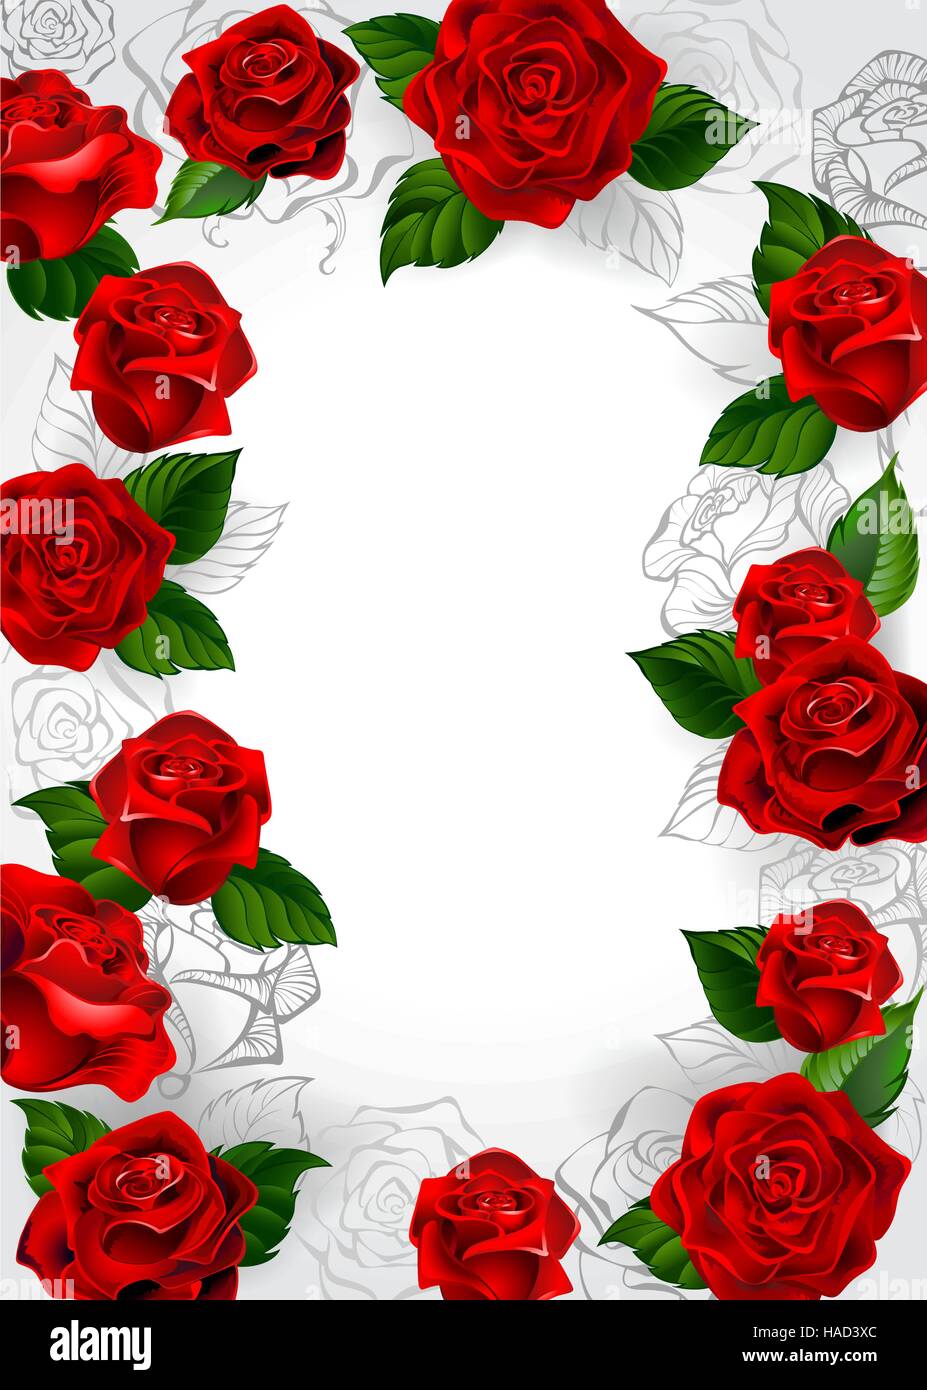 Rahmen der rote Rosen blühen Rosen und Umriss auf einem weißen Hintergrund. Stock Vektor